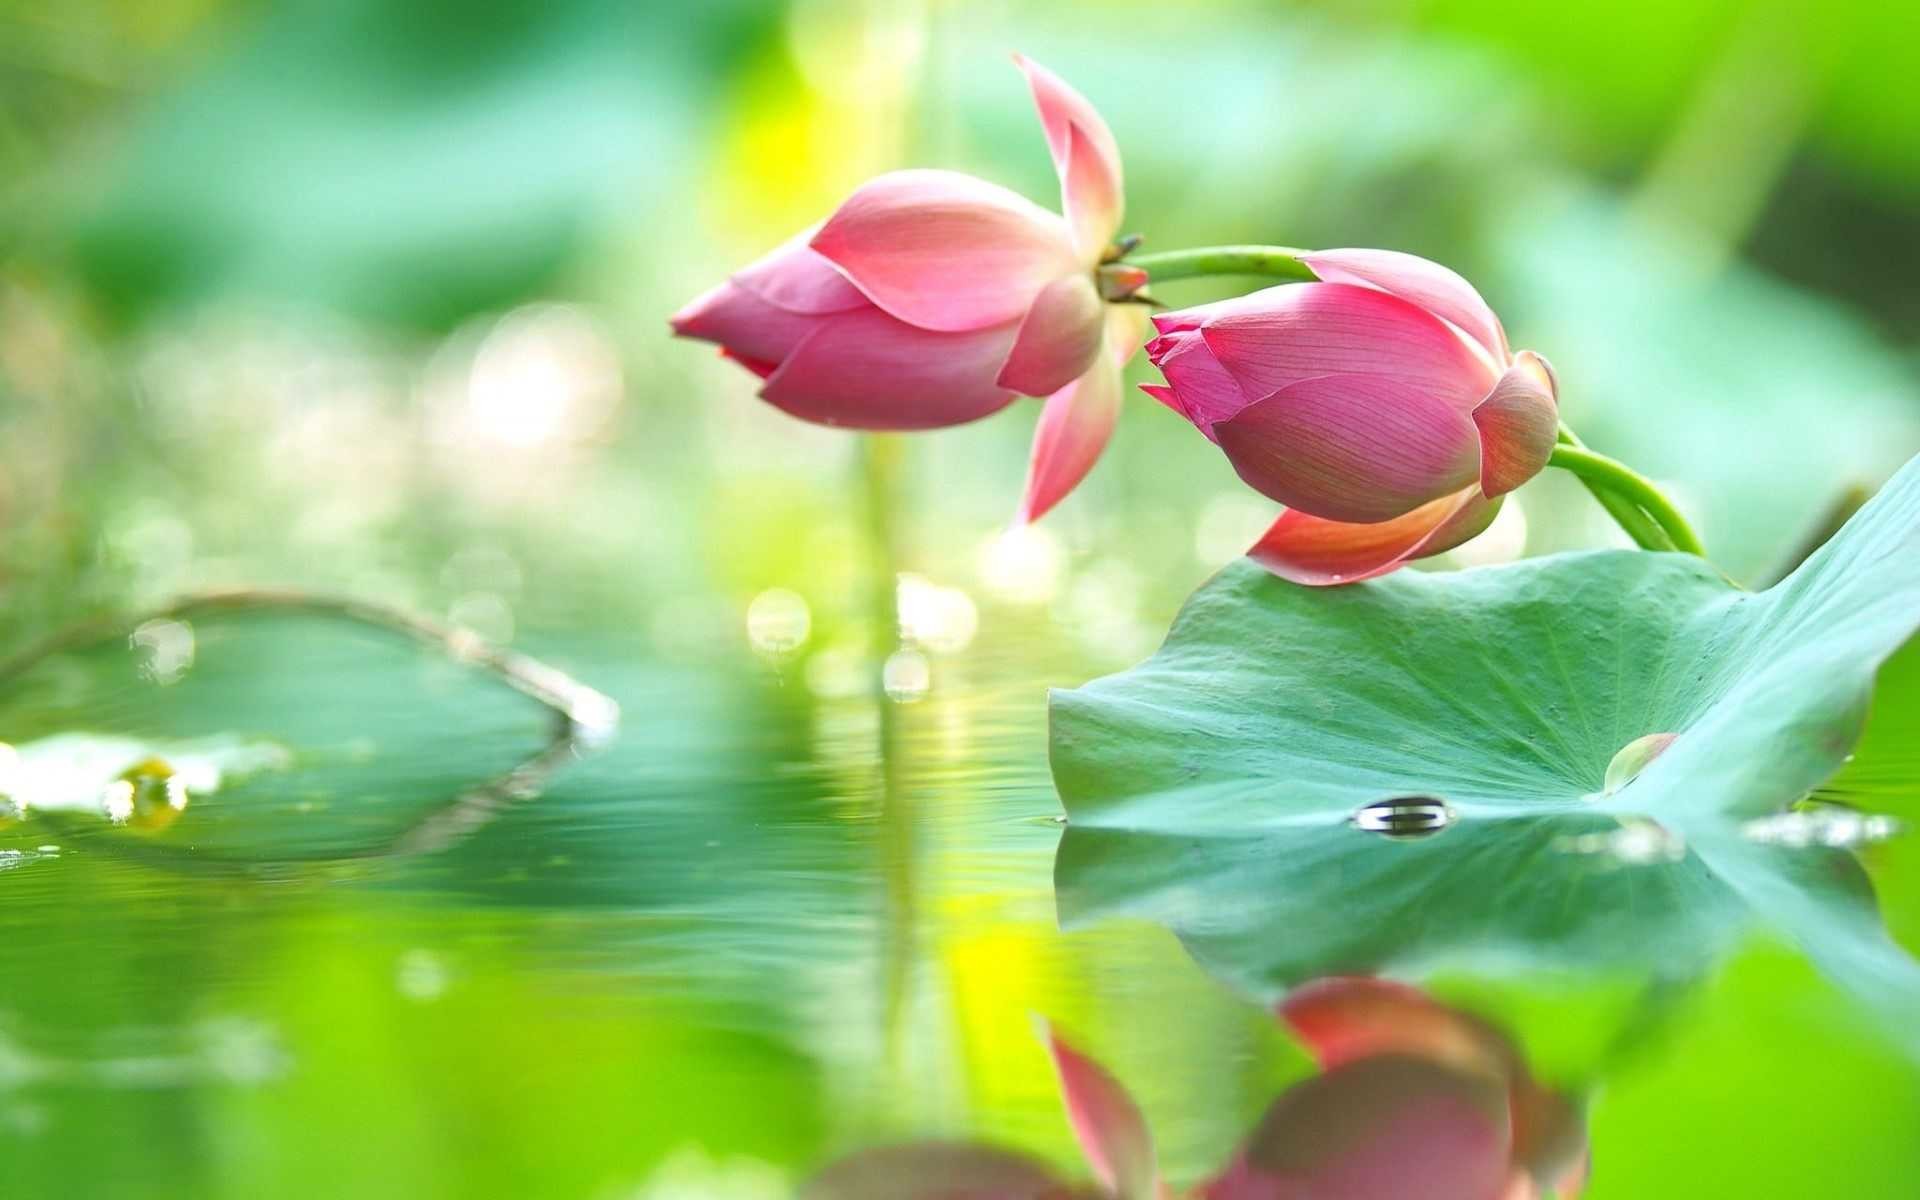 Beautiful Lotus Flower Wallpaper - Lotus With Water Drops - HD Wallpaper 